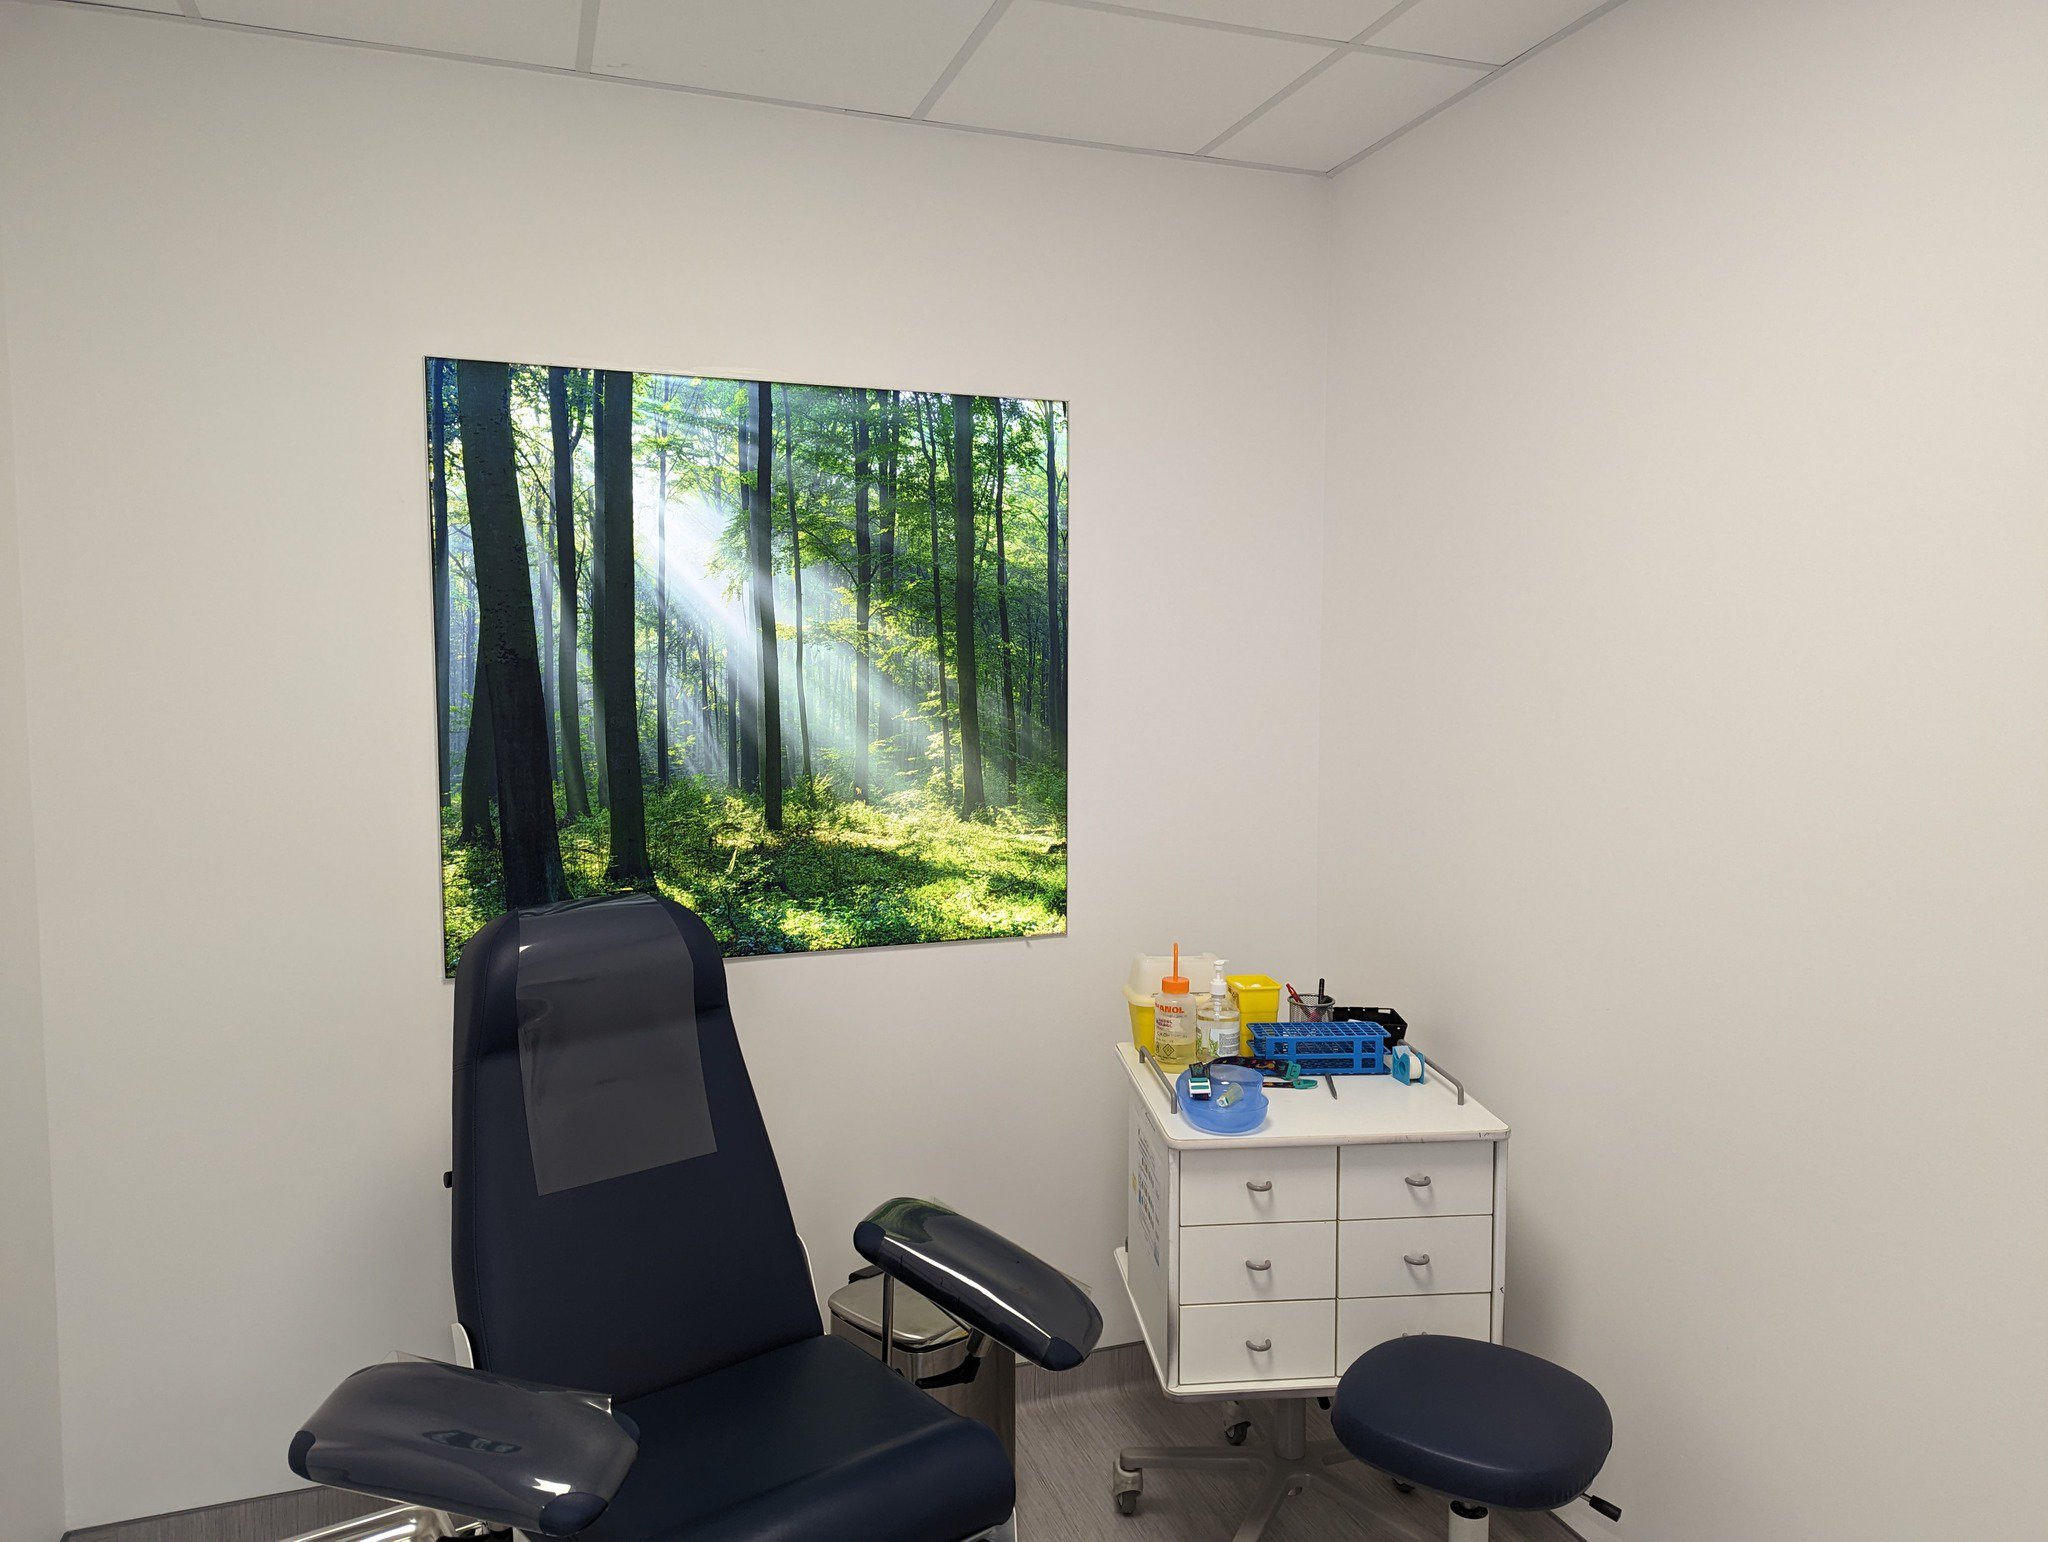 Un cabinet médical moderne avec un fauteuil inclinable et une armoire latérale contenant des fournitures médicales du Laboratoire Charleville Carnot Bio Ard'Aisne, décoré d'une grande photographie murale d'une forêt ensoleillée.